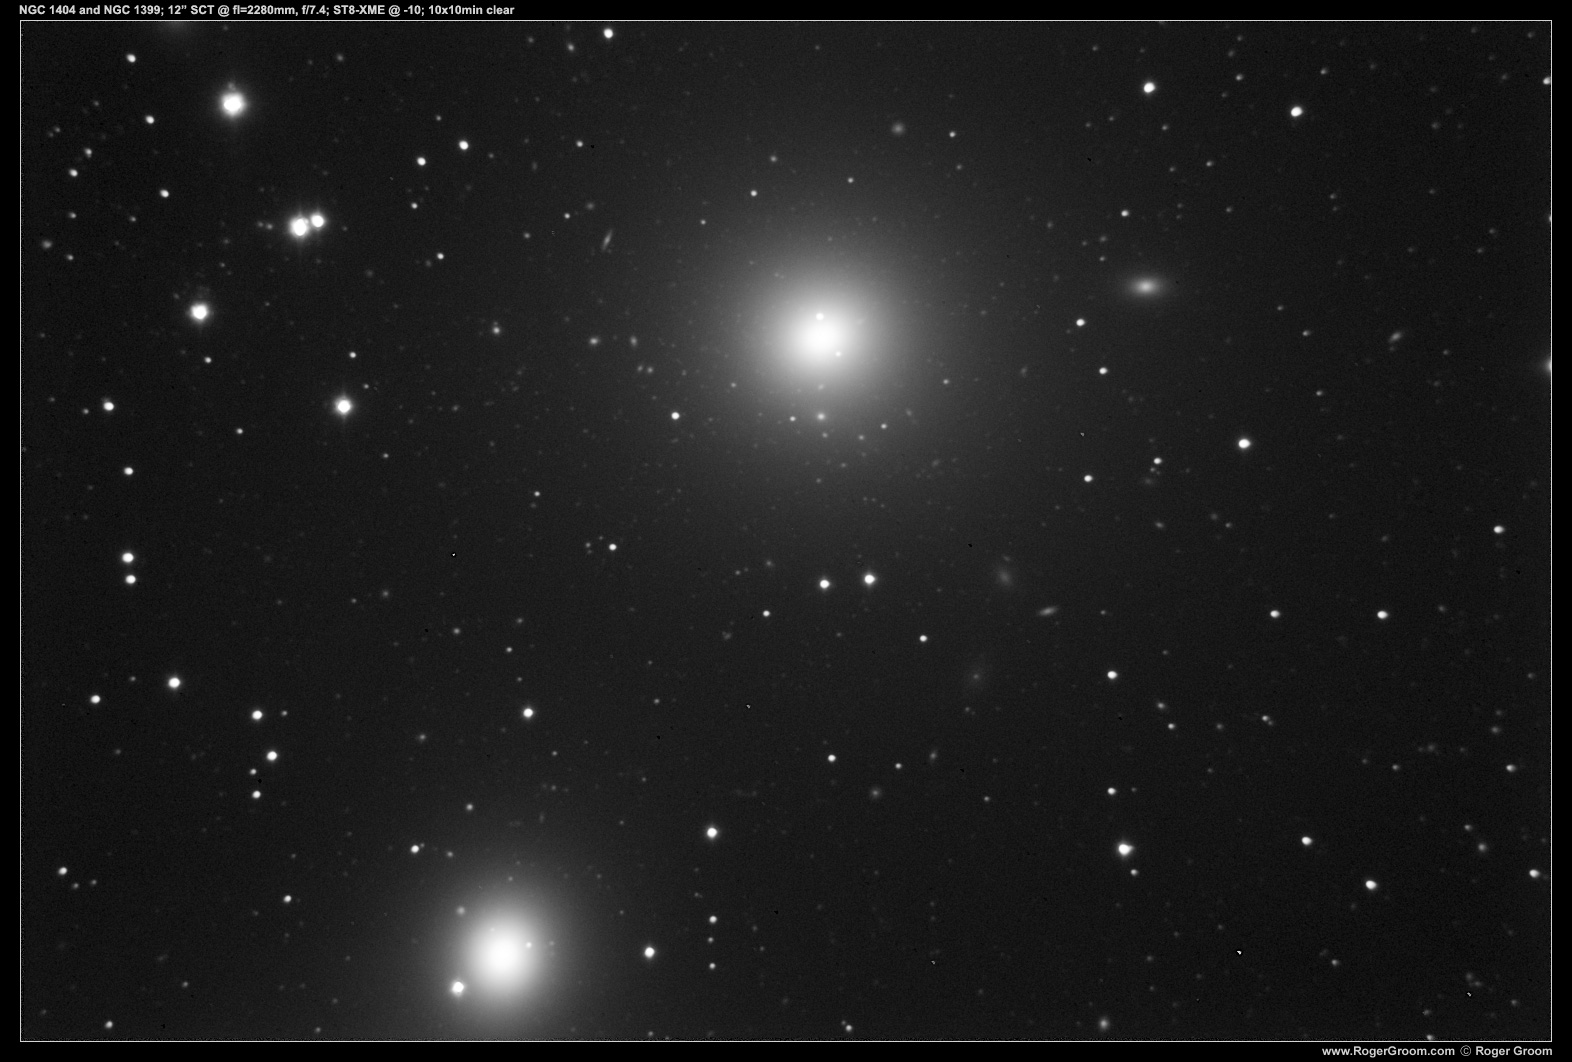 NGC 1404 and NGC 1399 (10 x 10min exposures)